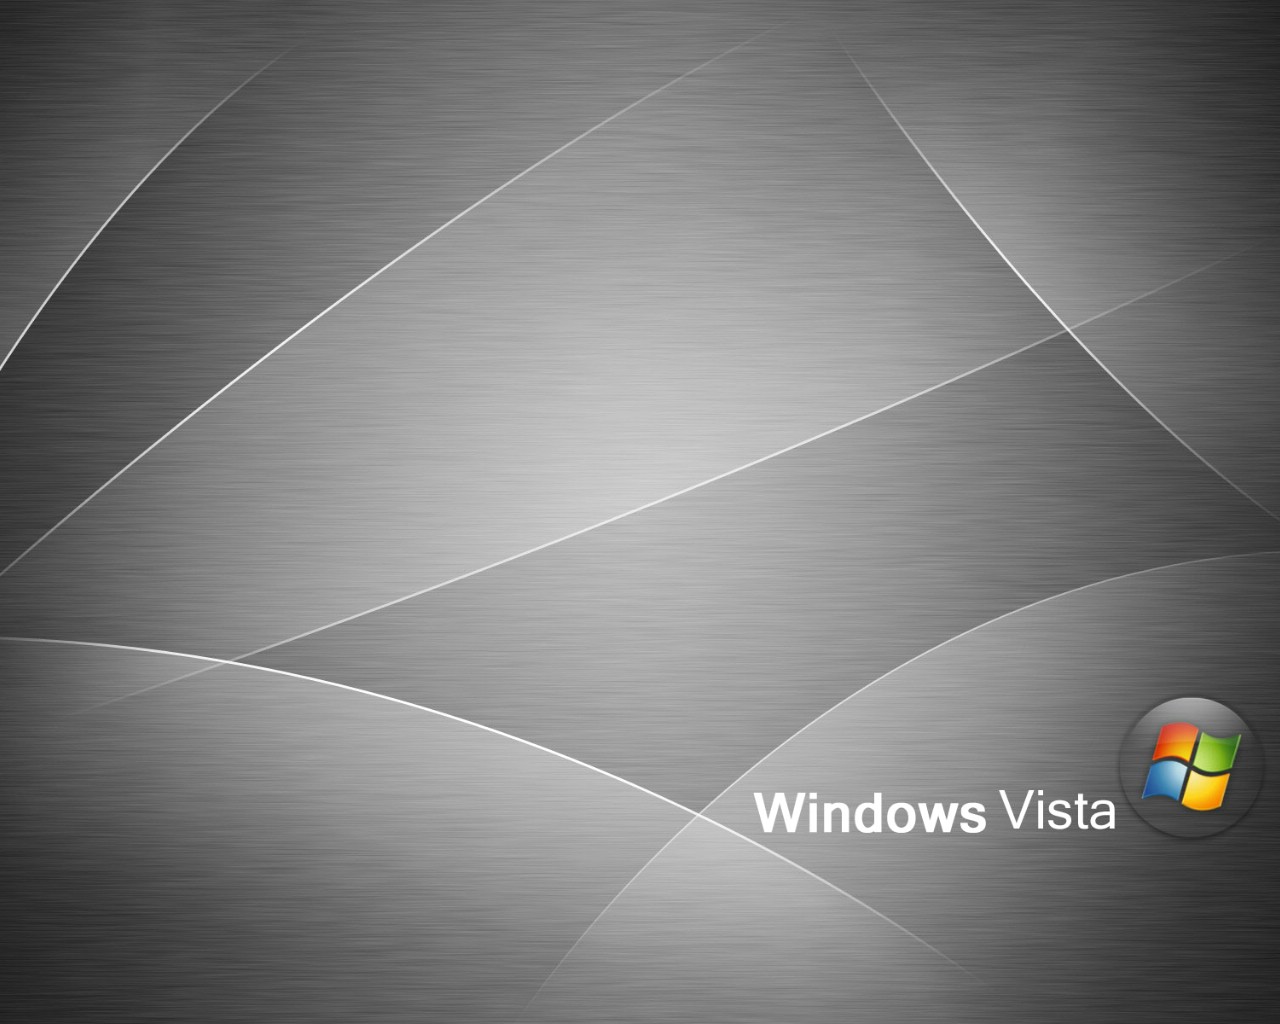 壁纸1280x1024超高分辨率Windows Vista简约壁纸壁纸 超高分辨率Windows Vista简约壁纸壁纸 超高分辨率Windows Vista简约壁纸图片 超高分辨率Windows Vista简约壁纸素材 创意壁纸 创意图库 创意图片素材桌面壁纸